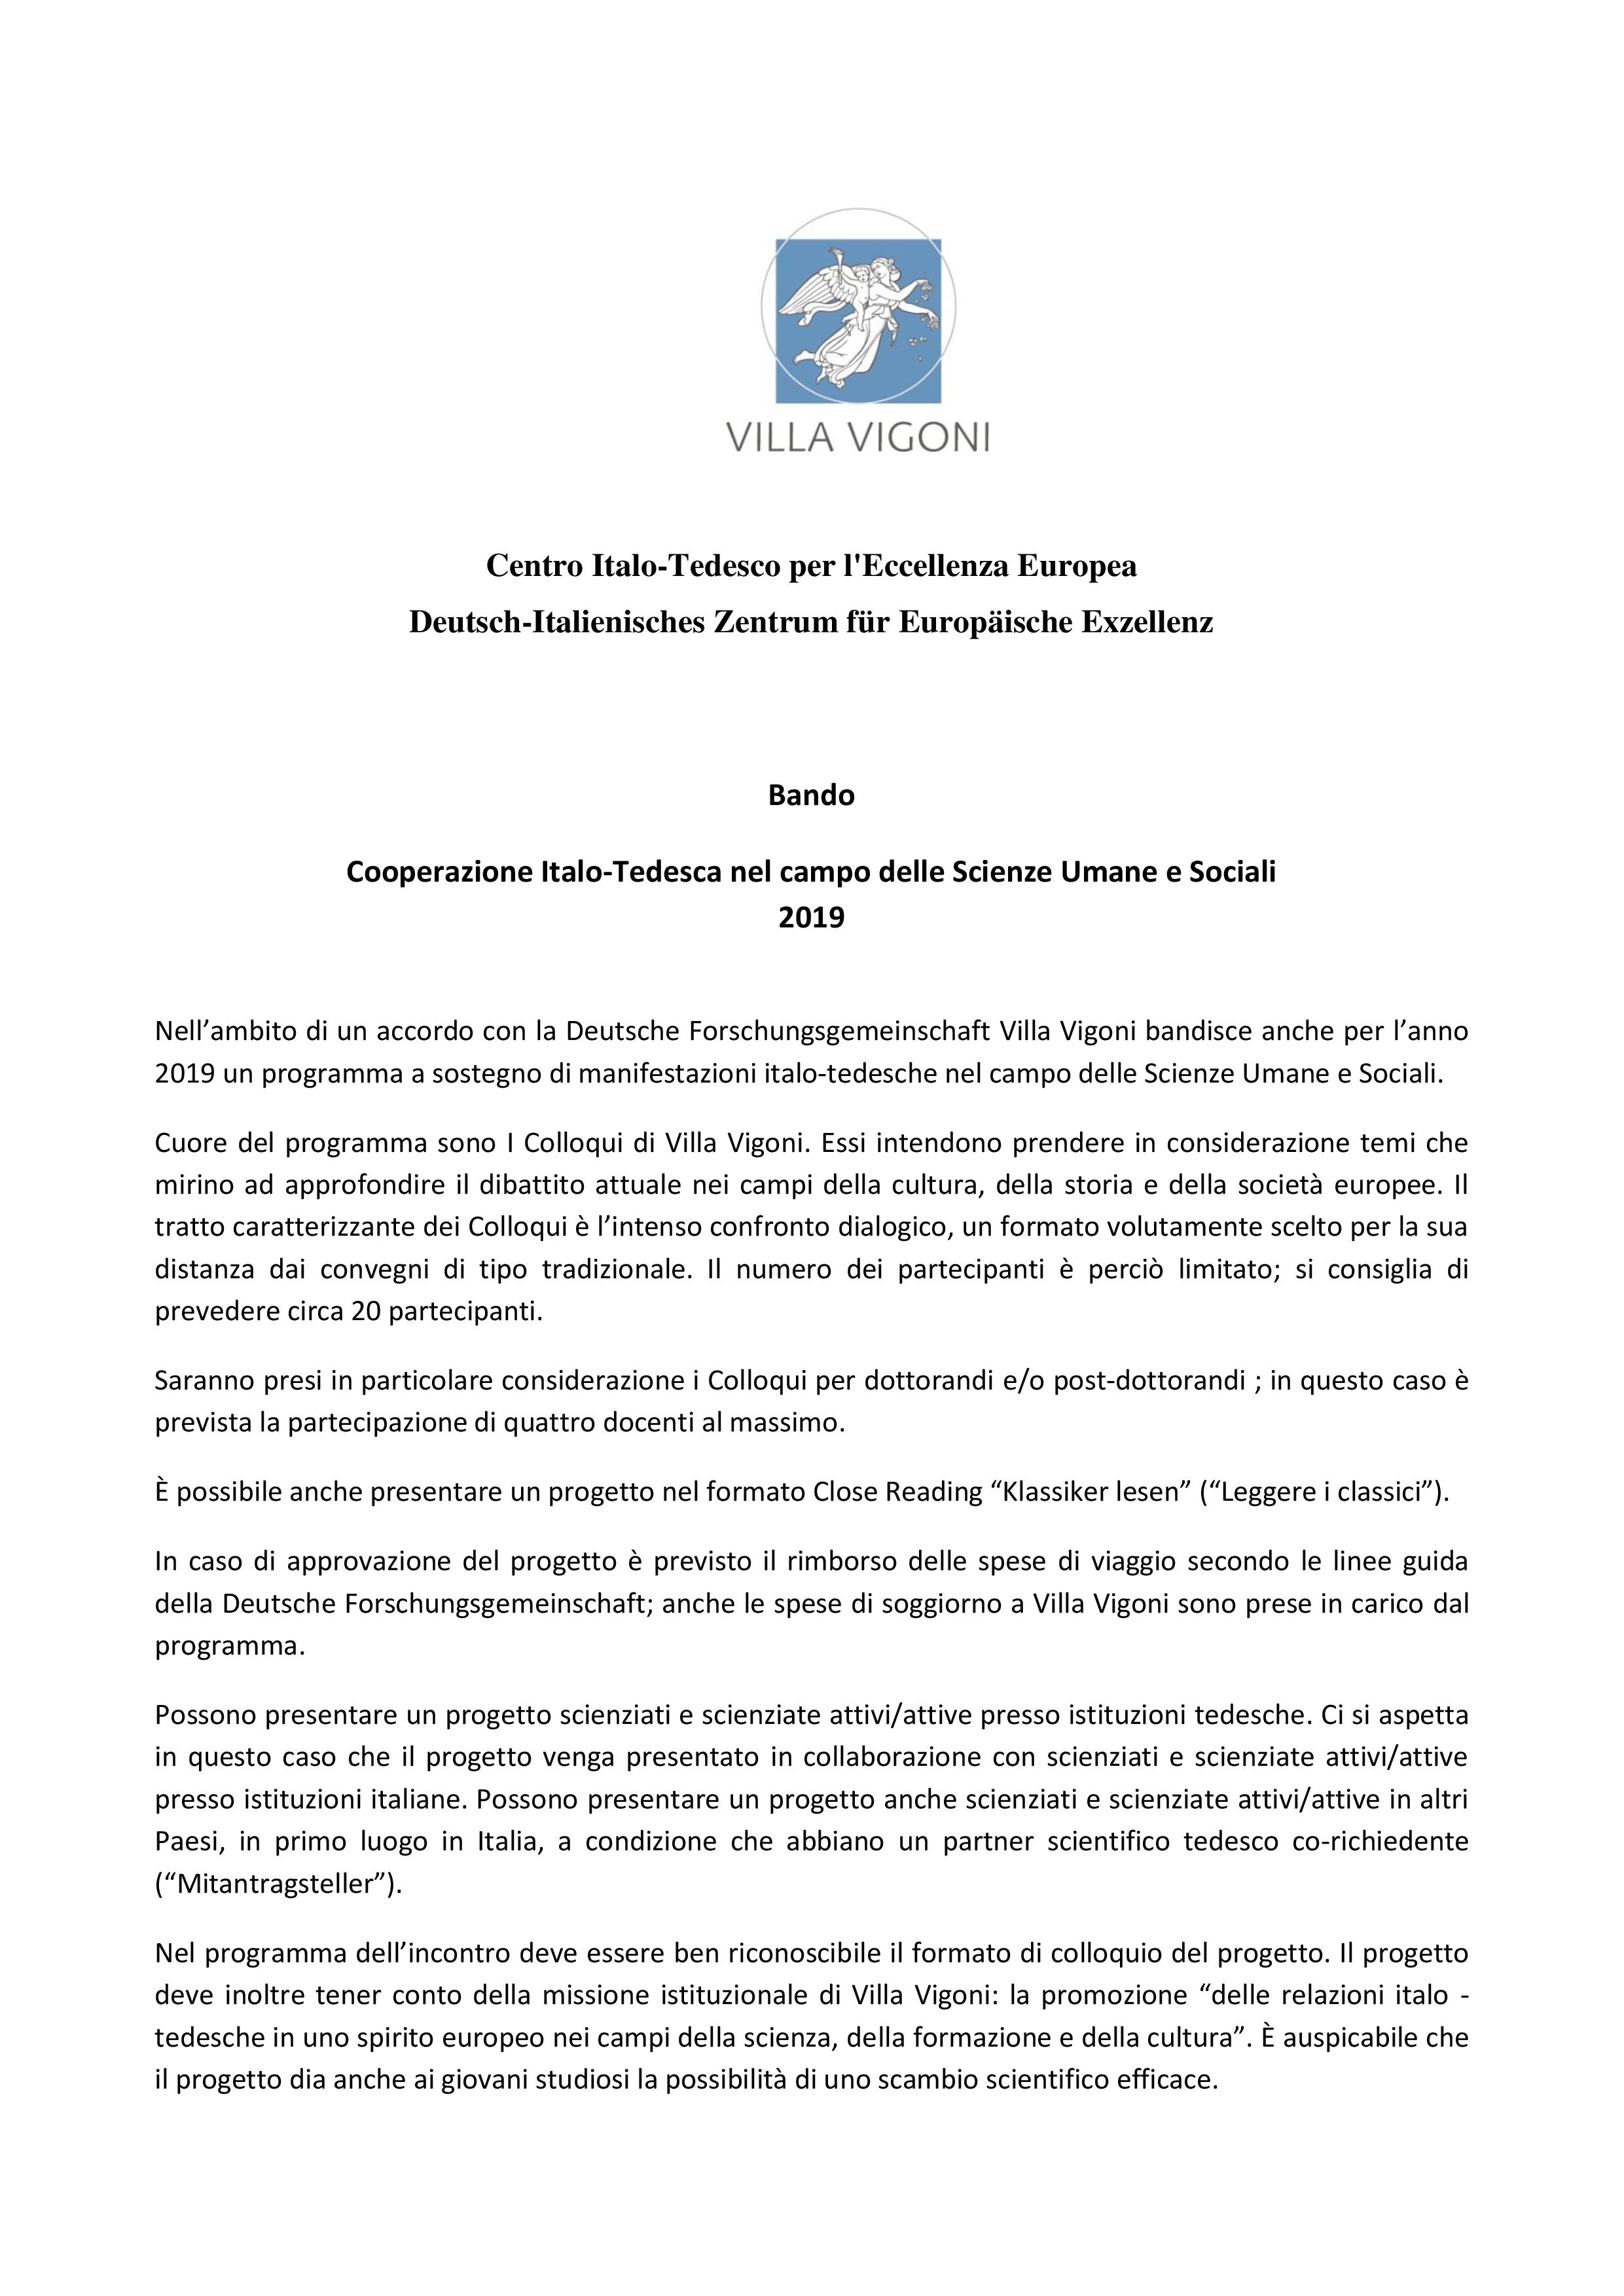 Cooperazione Italo-Tedesca_2019_BANDO-page-001